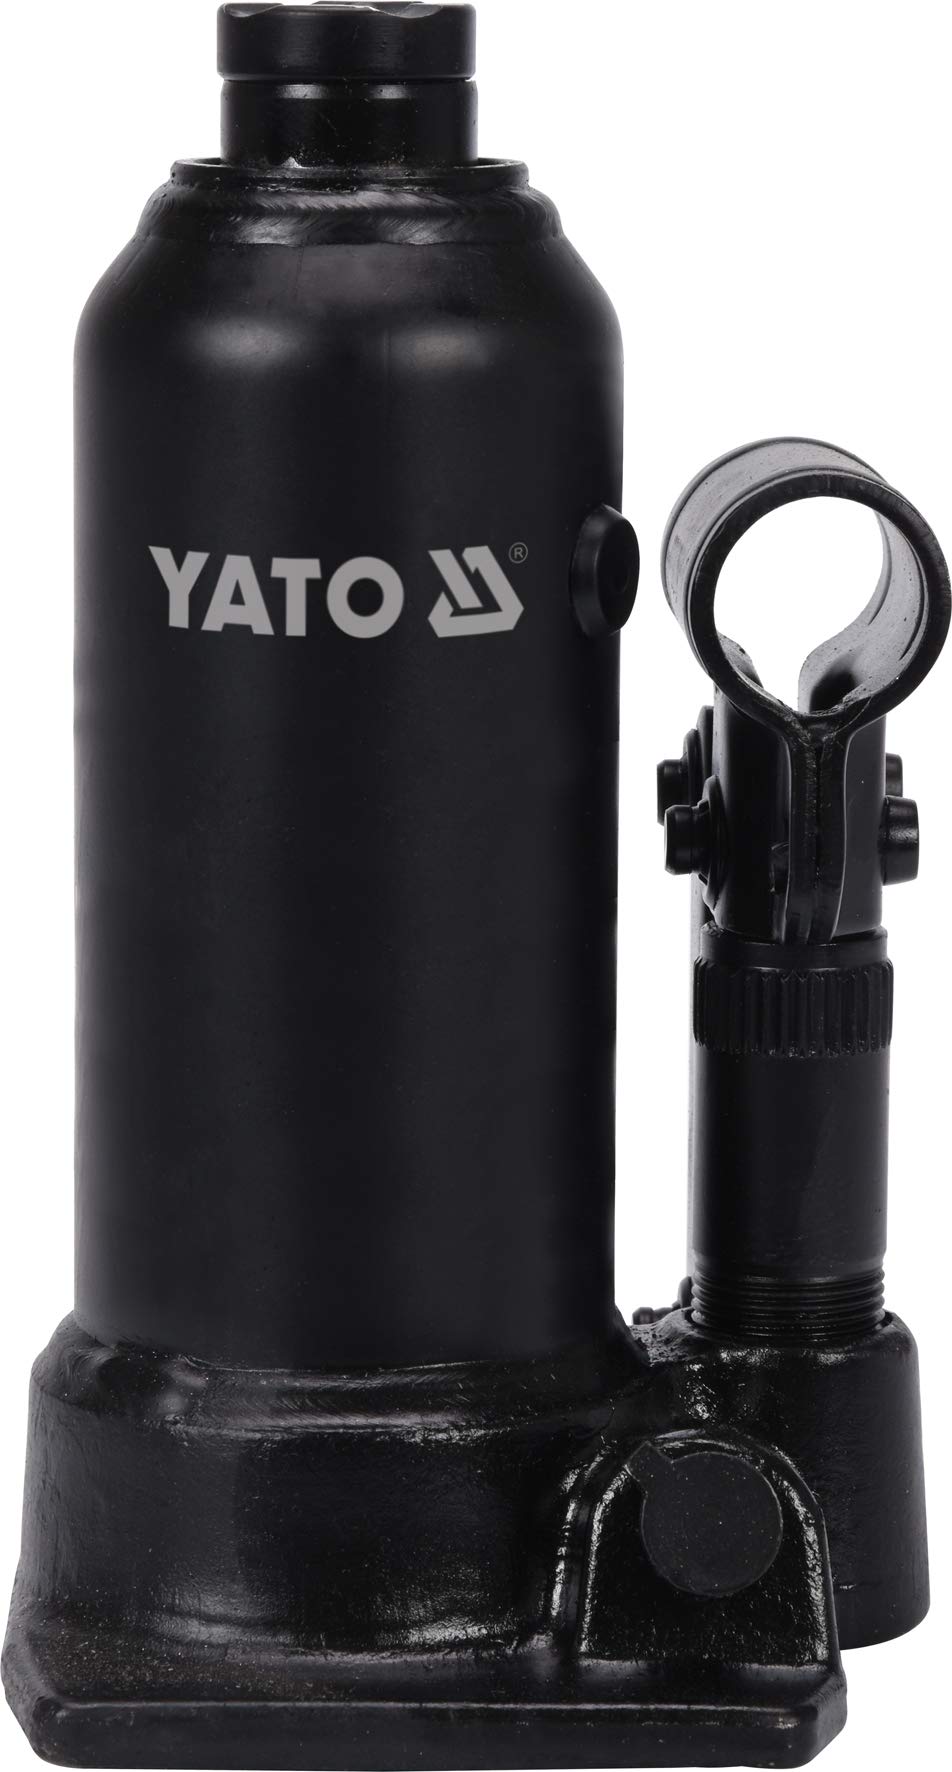 Yato Profi hydraulischer Stempelwagenheber 2 t / 2000 kg, Hubhöhe: 172 – 372 mm, stabile Ausführung, Flaschenheber Wagenheber Hydraulikheber von YATO